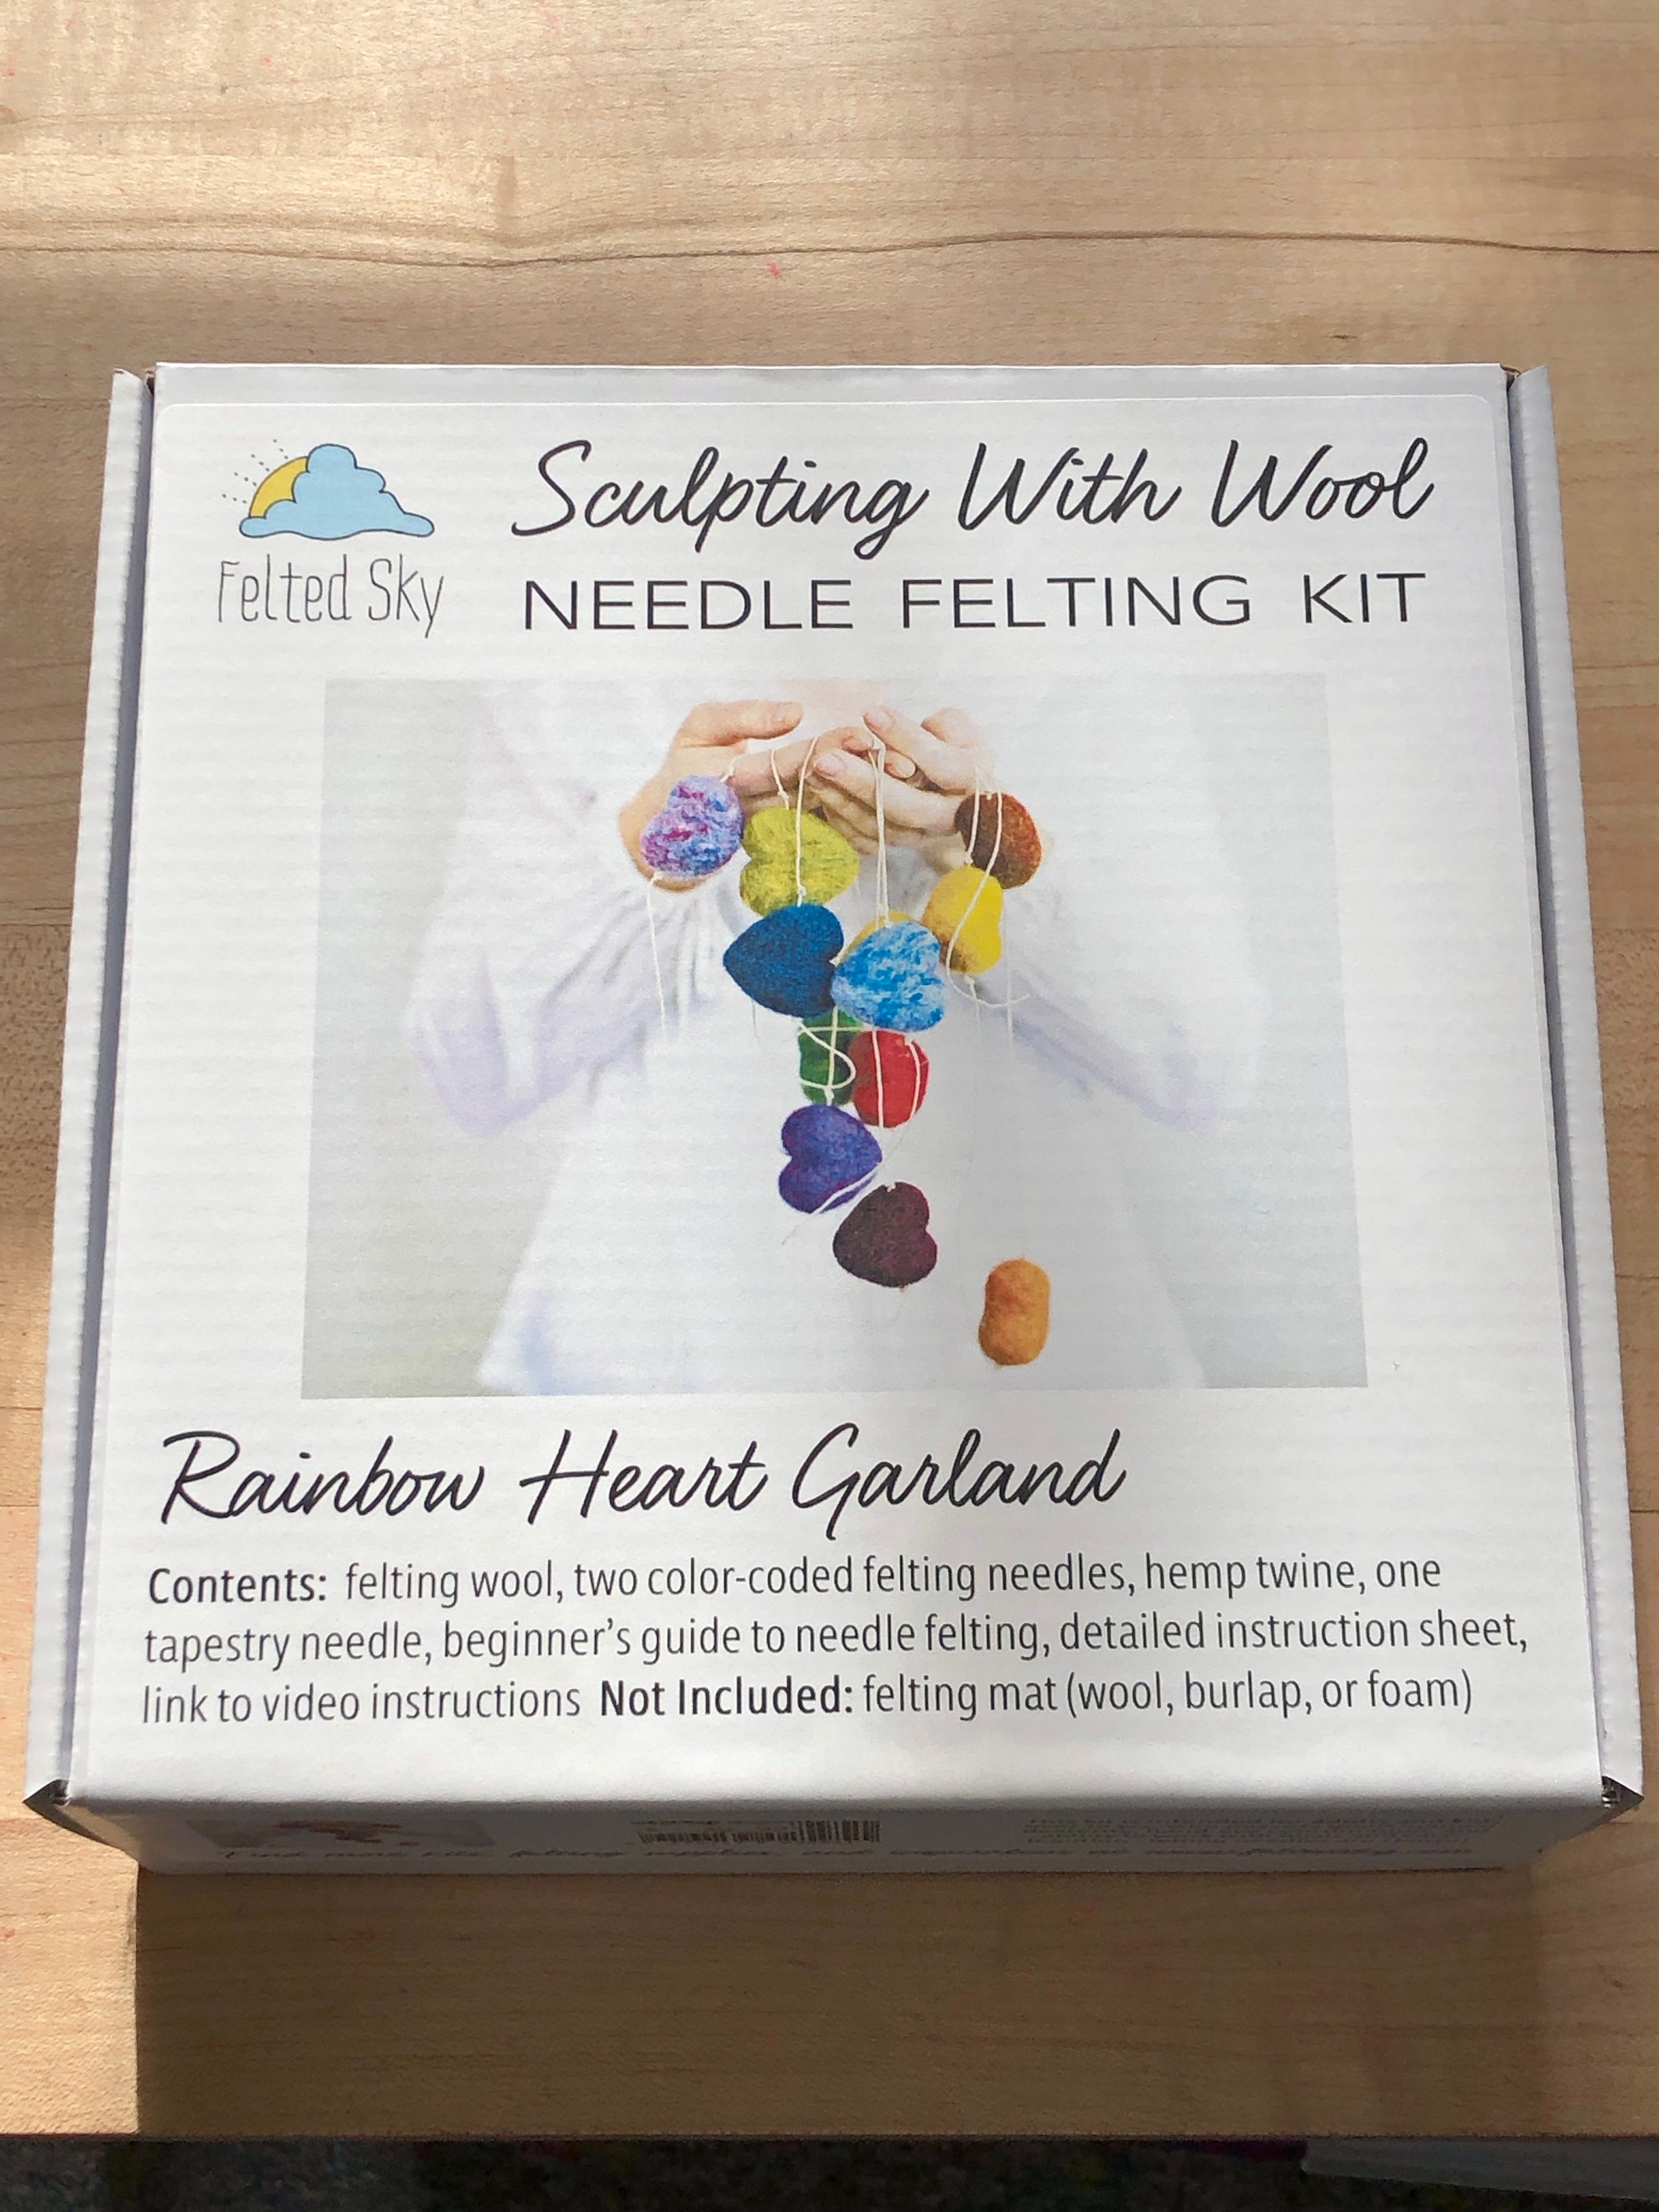 Beginner's Guide to Needle Felting